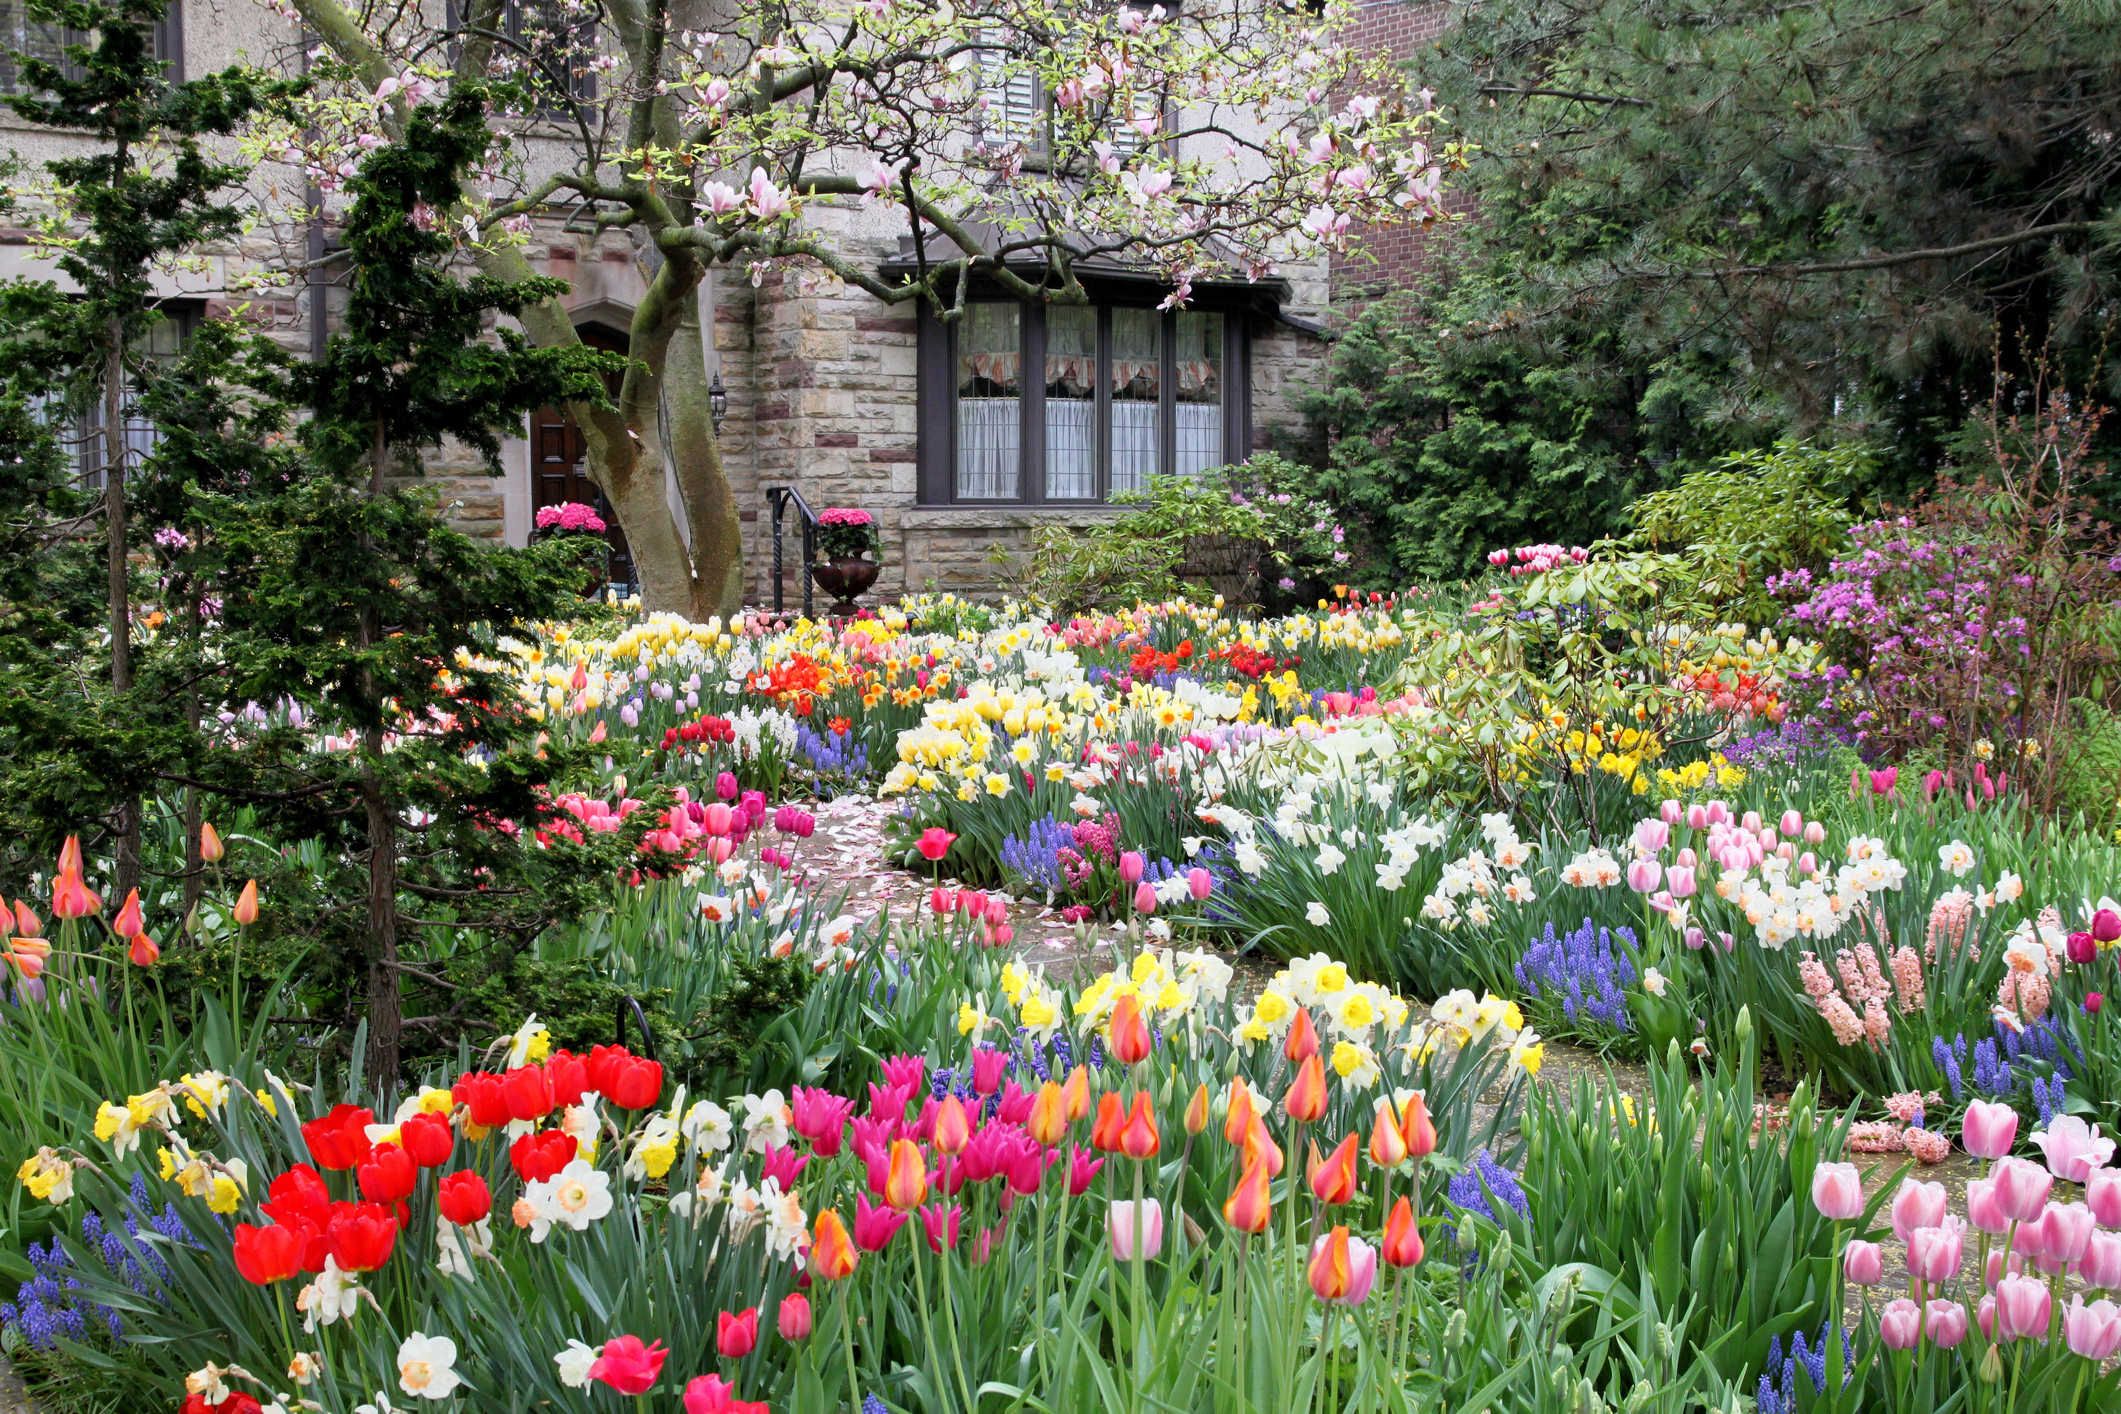 Bright spring garden - Over50s.com